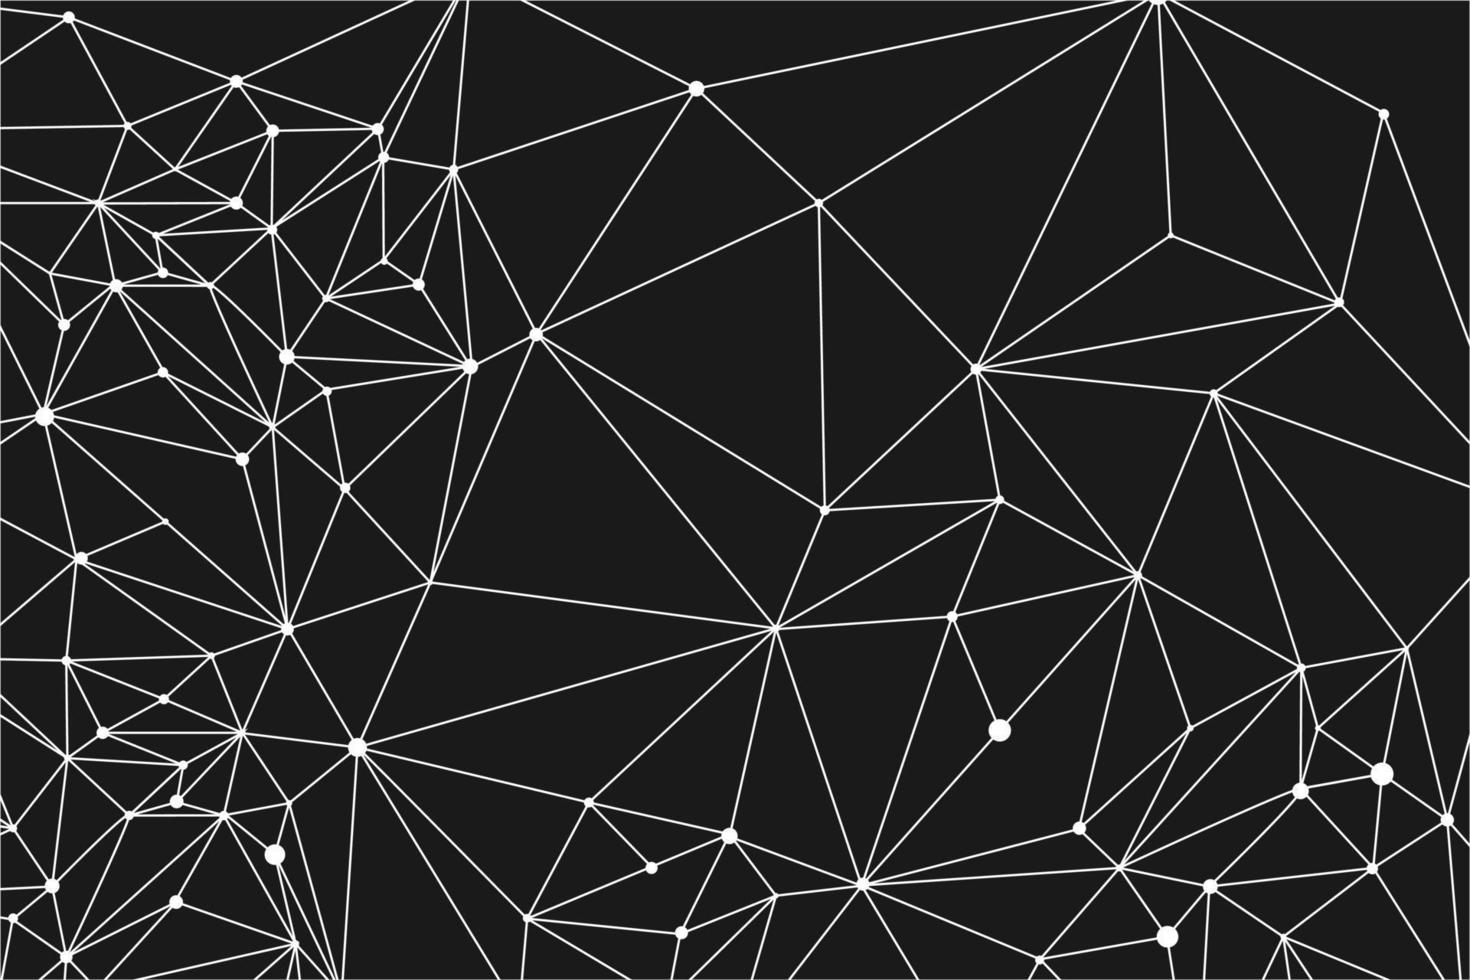 elemento de investigación en la visualización de big data. fondo abstracto negro con líneas y nodos de plexo. diseño de ciencia geométrica vector